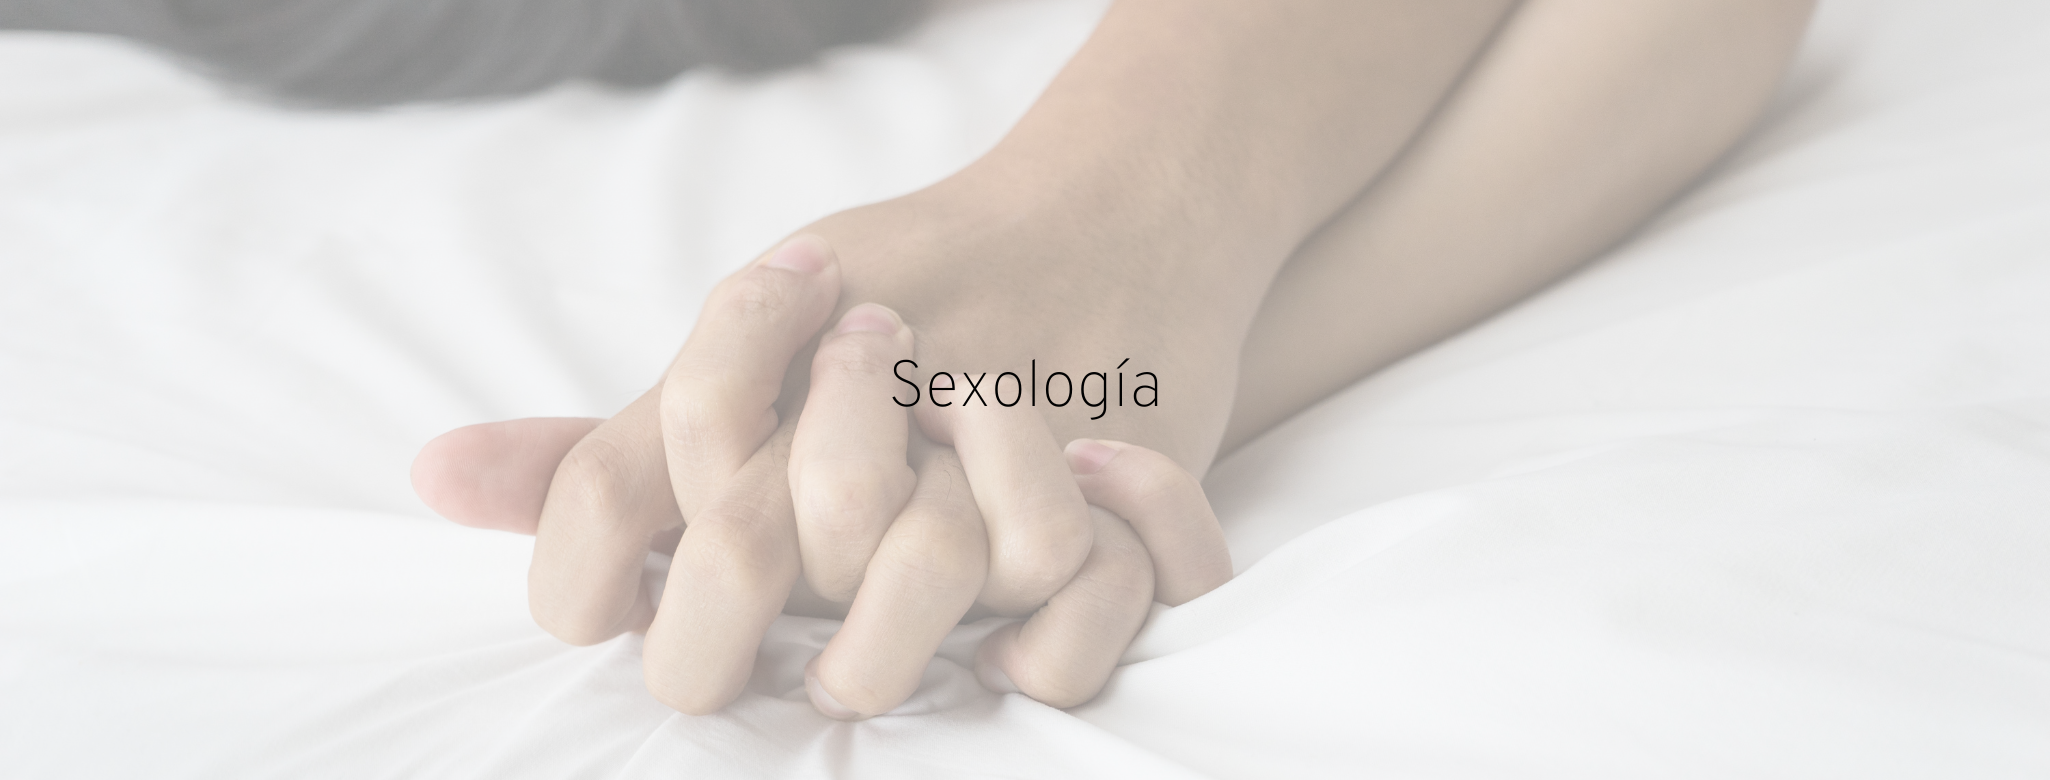 Sexología